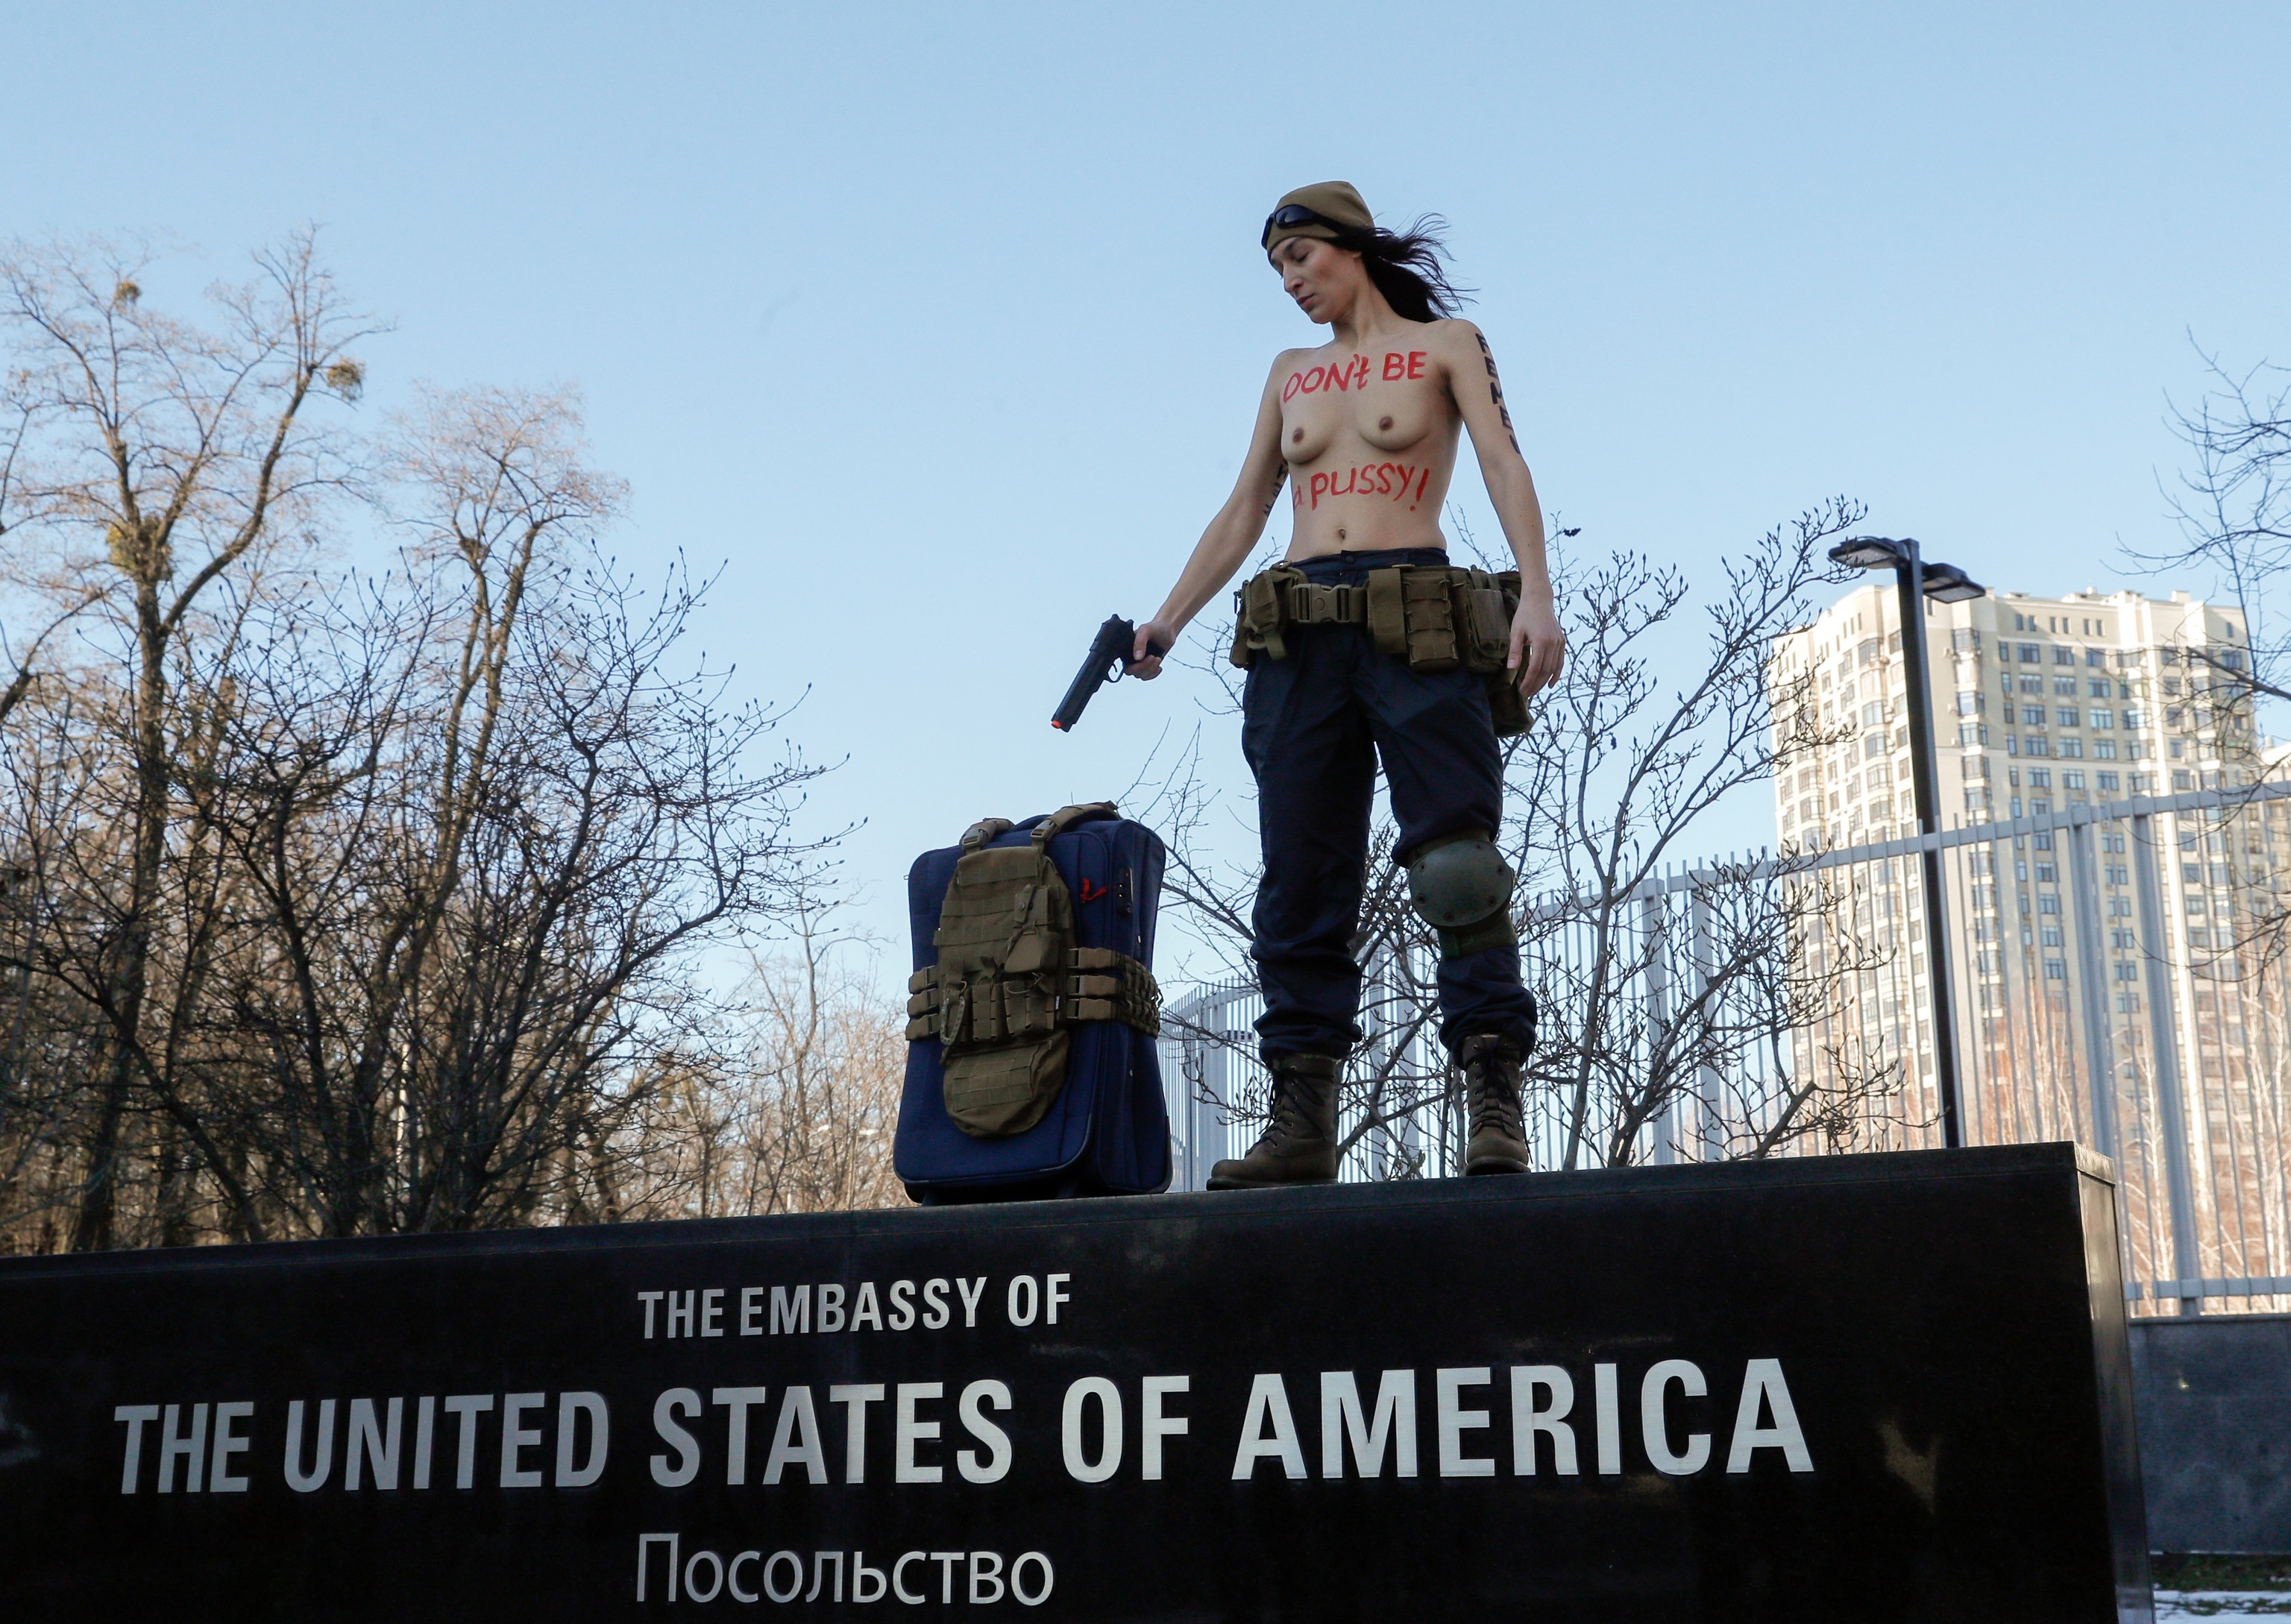 Una activista de Femen en la embajada de EEUU en Kiev en protesta por la retirada de diplomáticos.